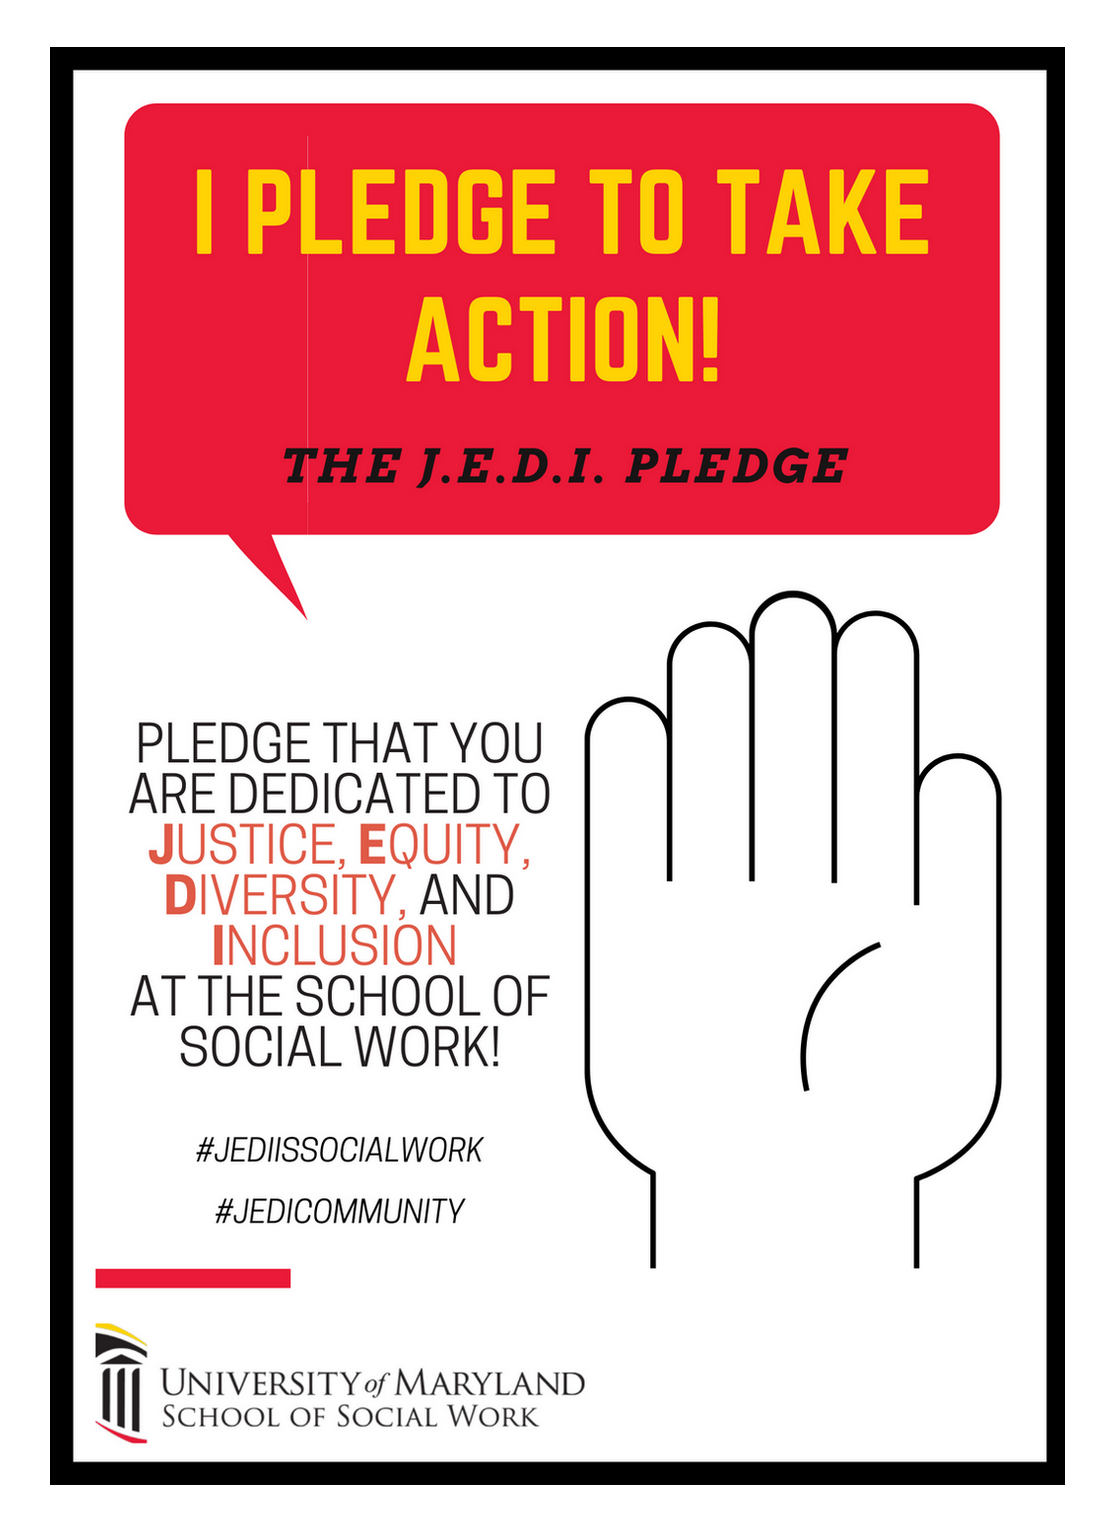 J.E.D.I. Pledge